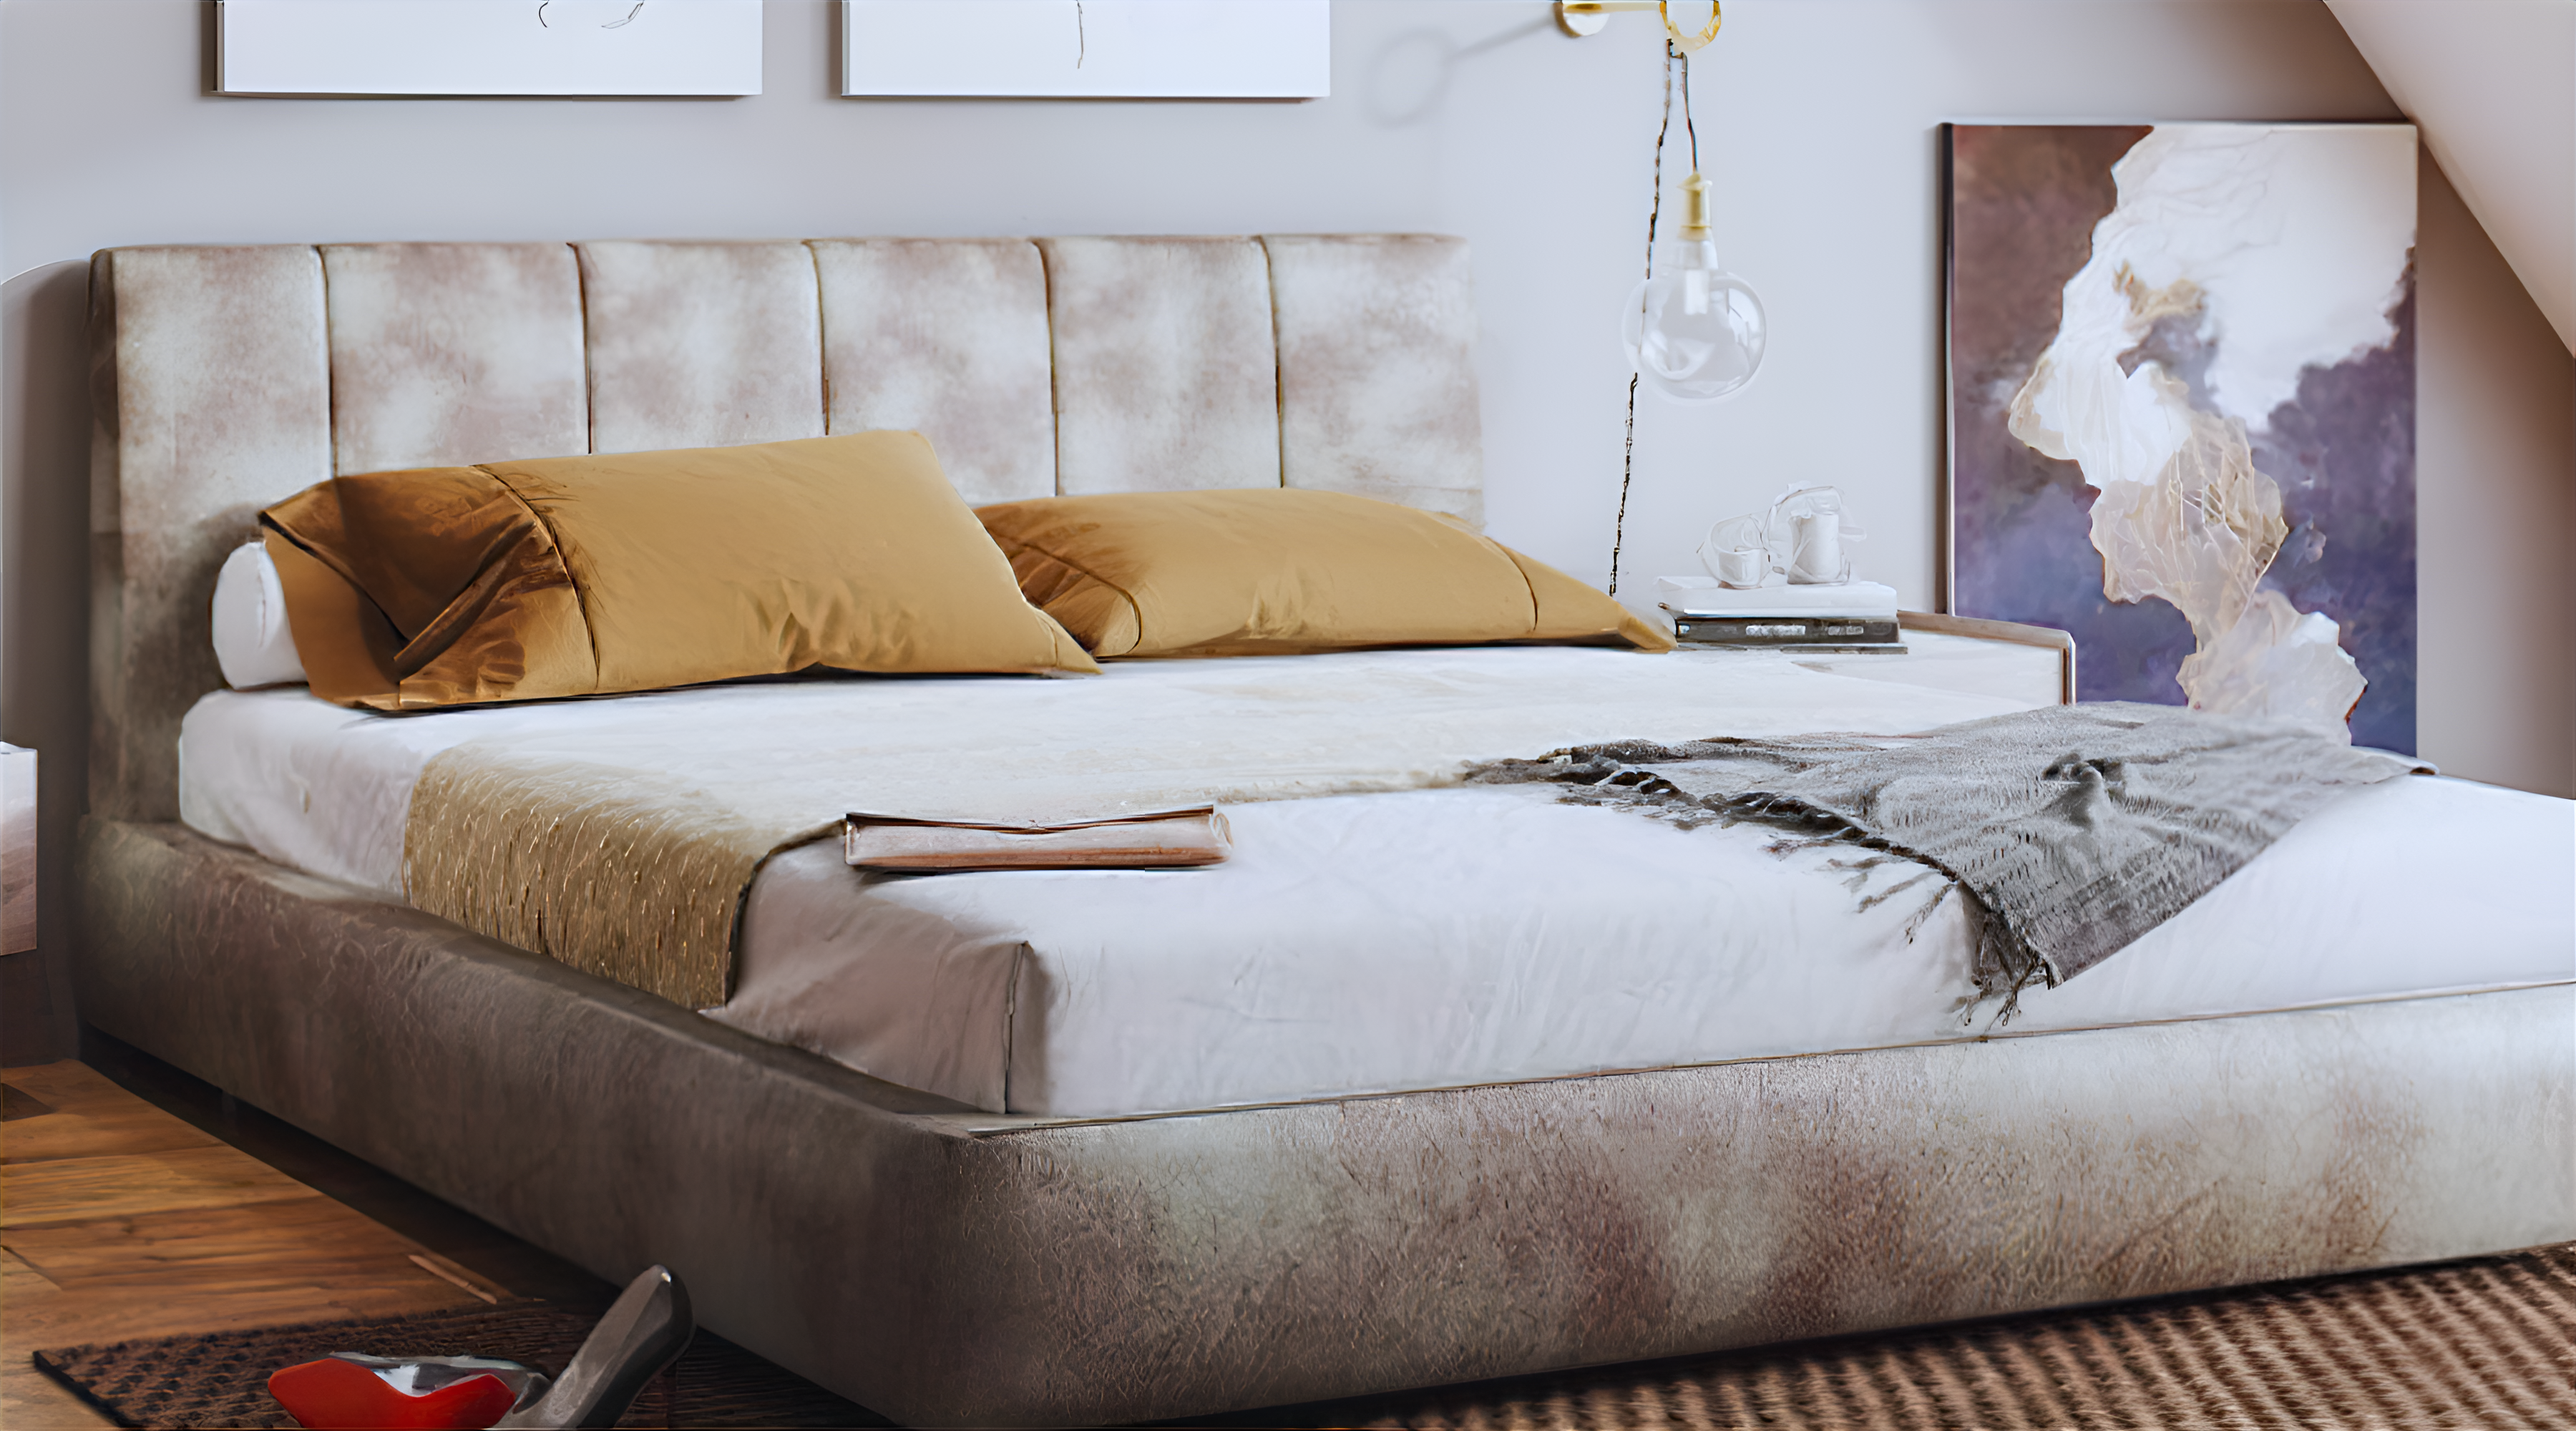 Scada Bed Design